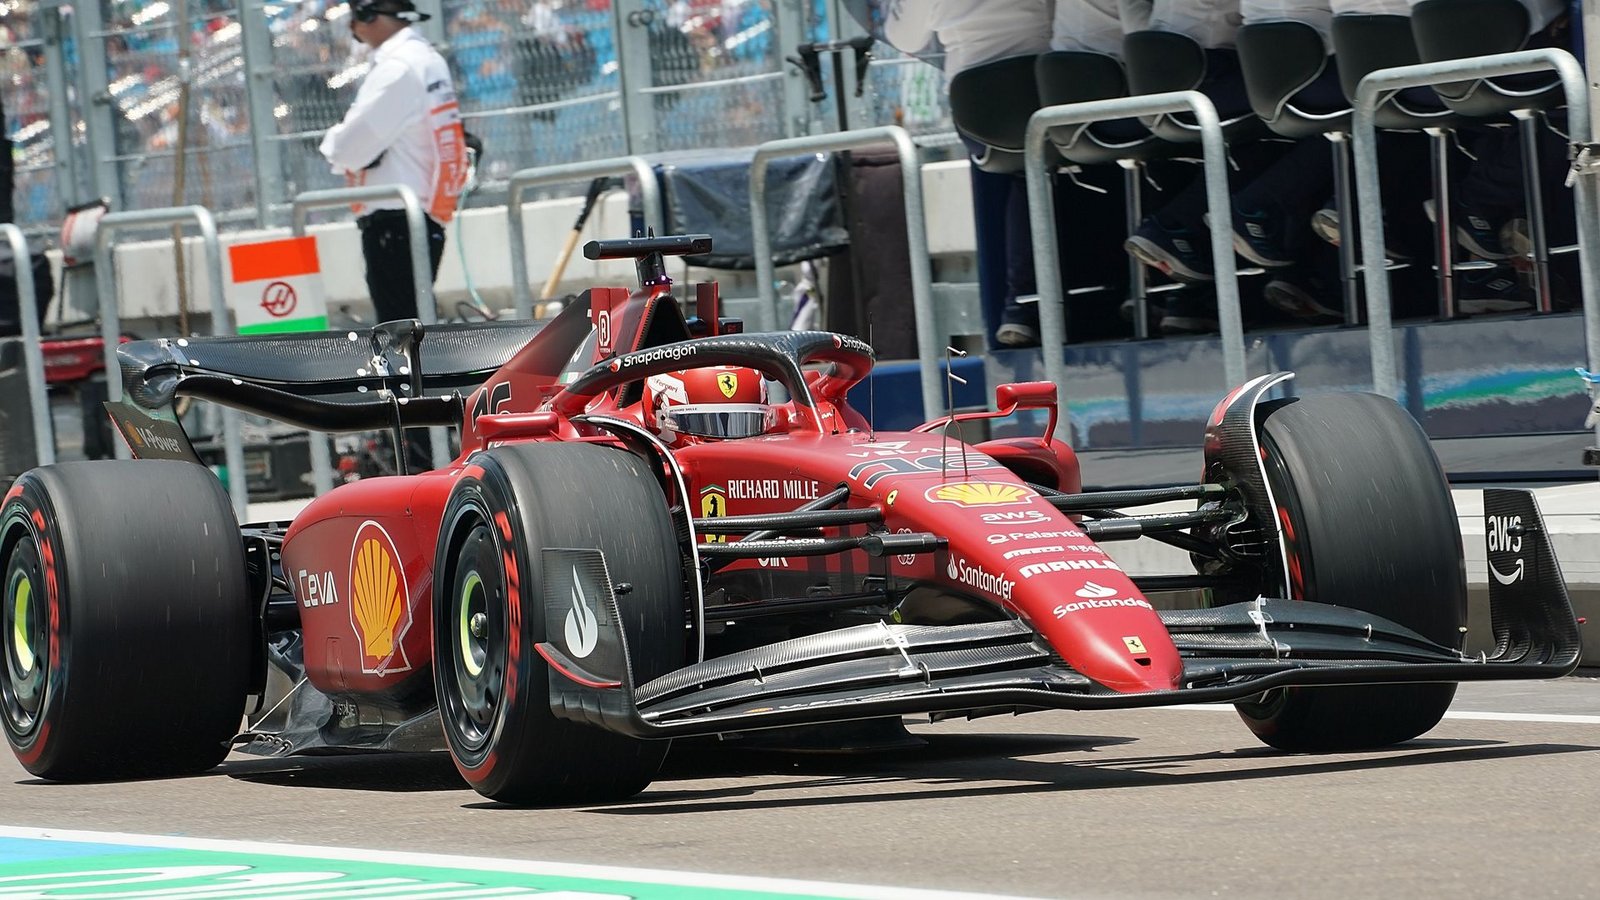 Ferrari-Pilot Charles Leclerc sicherte sich in Miami die Pole Position.Foto: Hasan Bratic/dpa